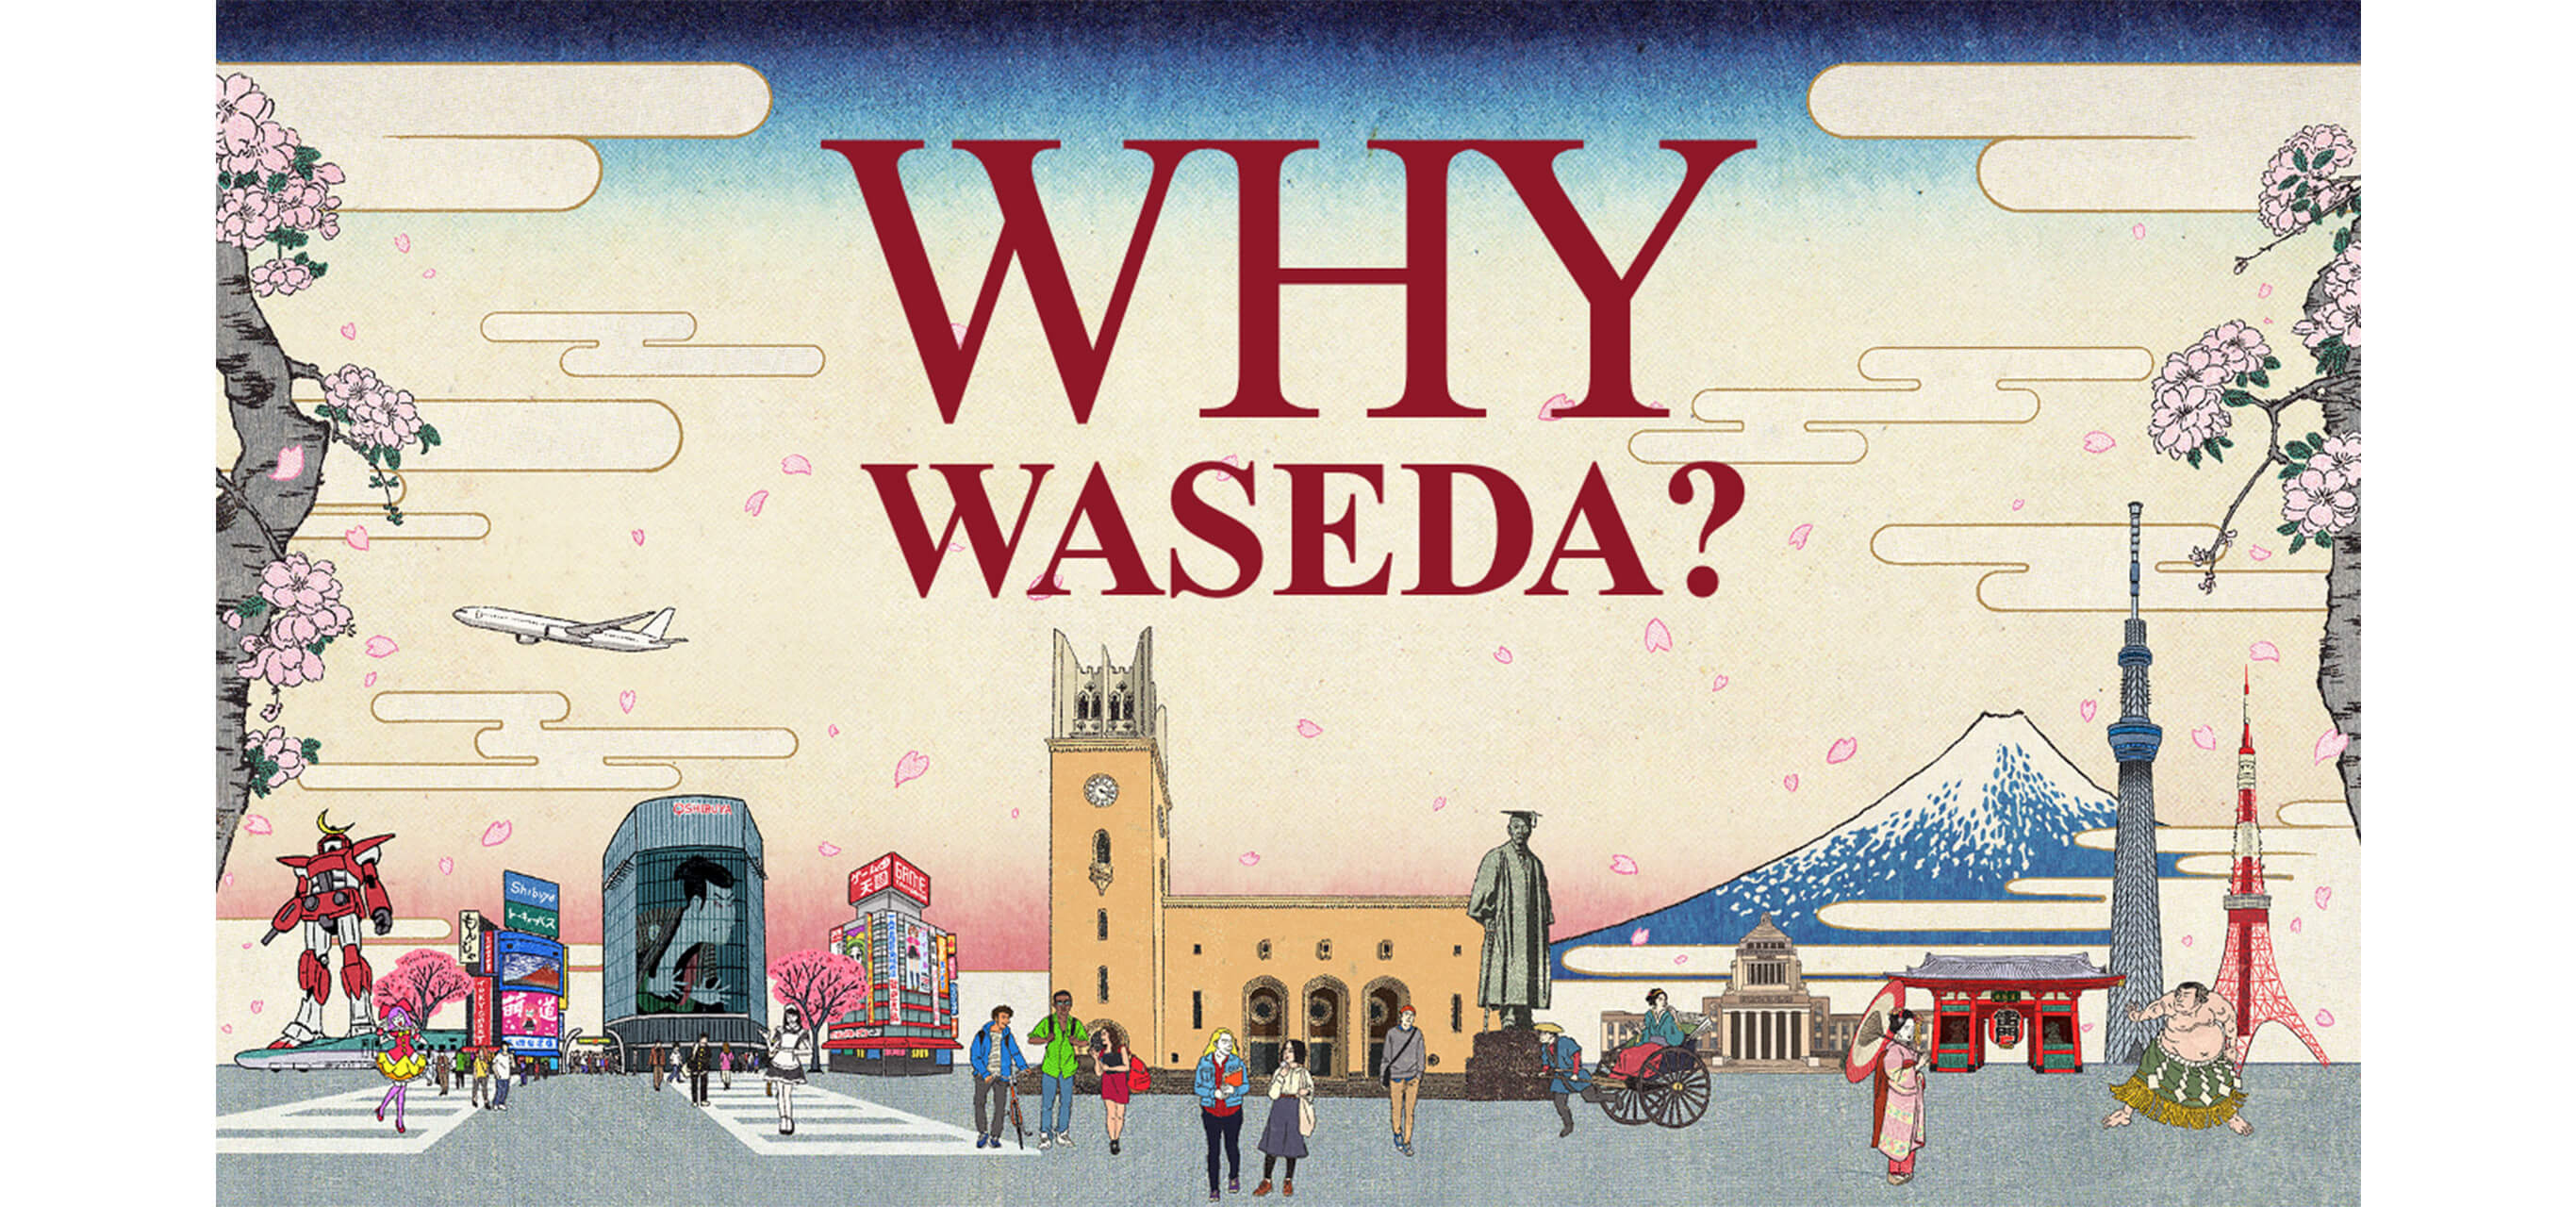 スライドの表紙。浮世絵風に描かれた富士山や桜、大学の校舎のイラストがあり、中央に大きく「WHY WASEDA？」と書かれている。